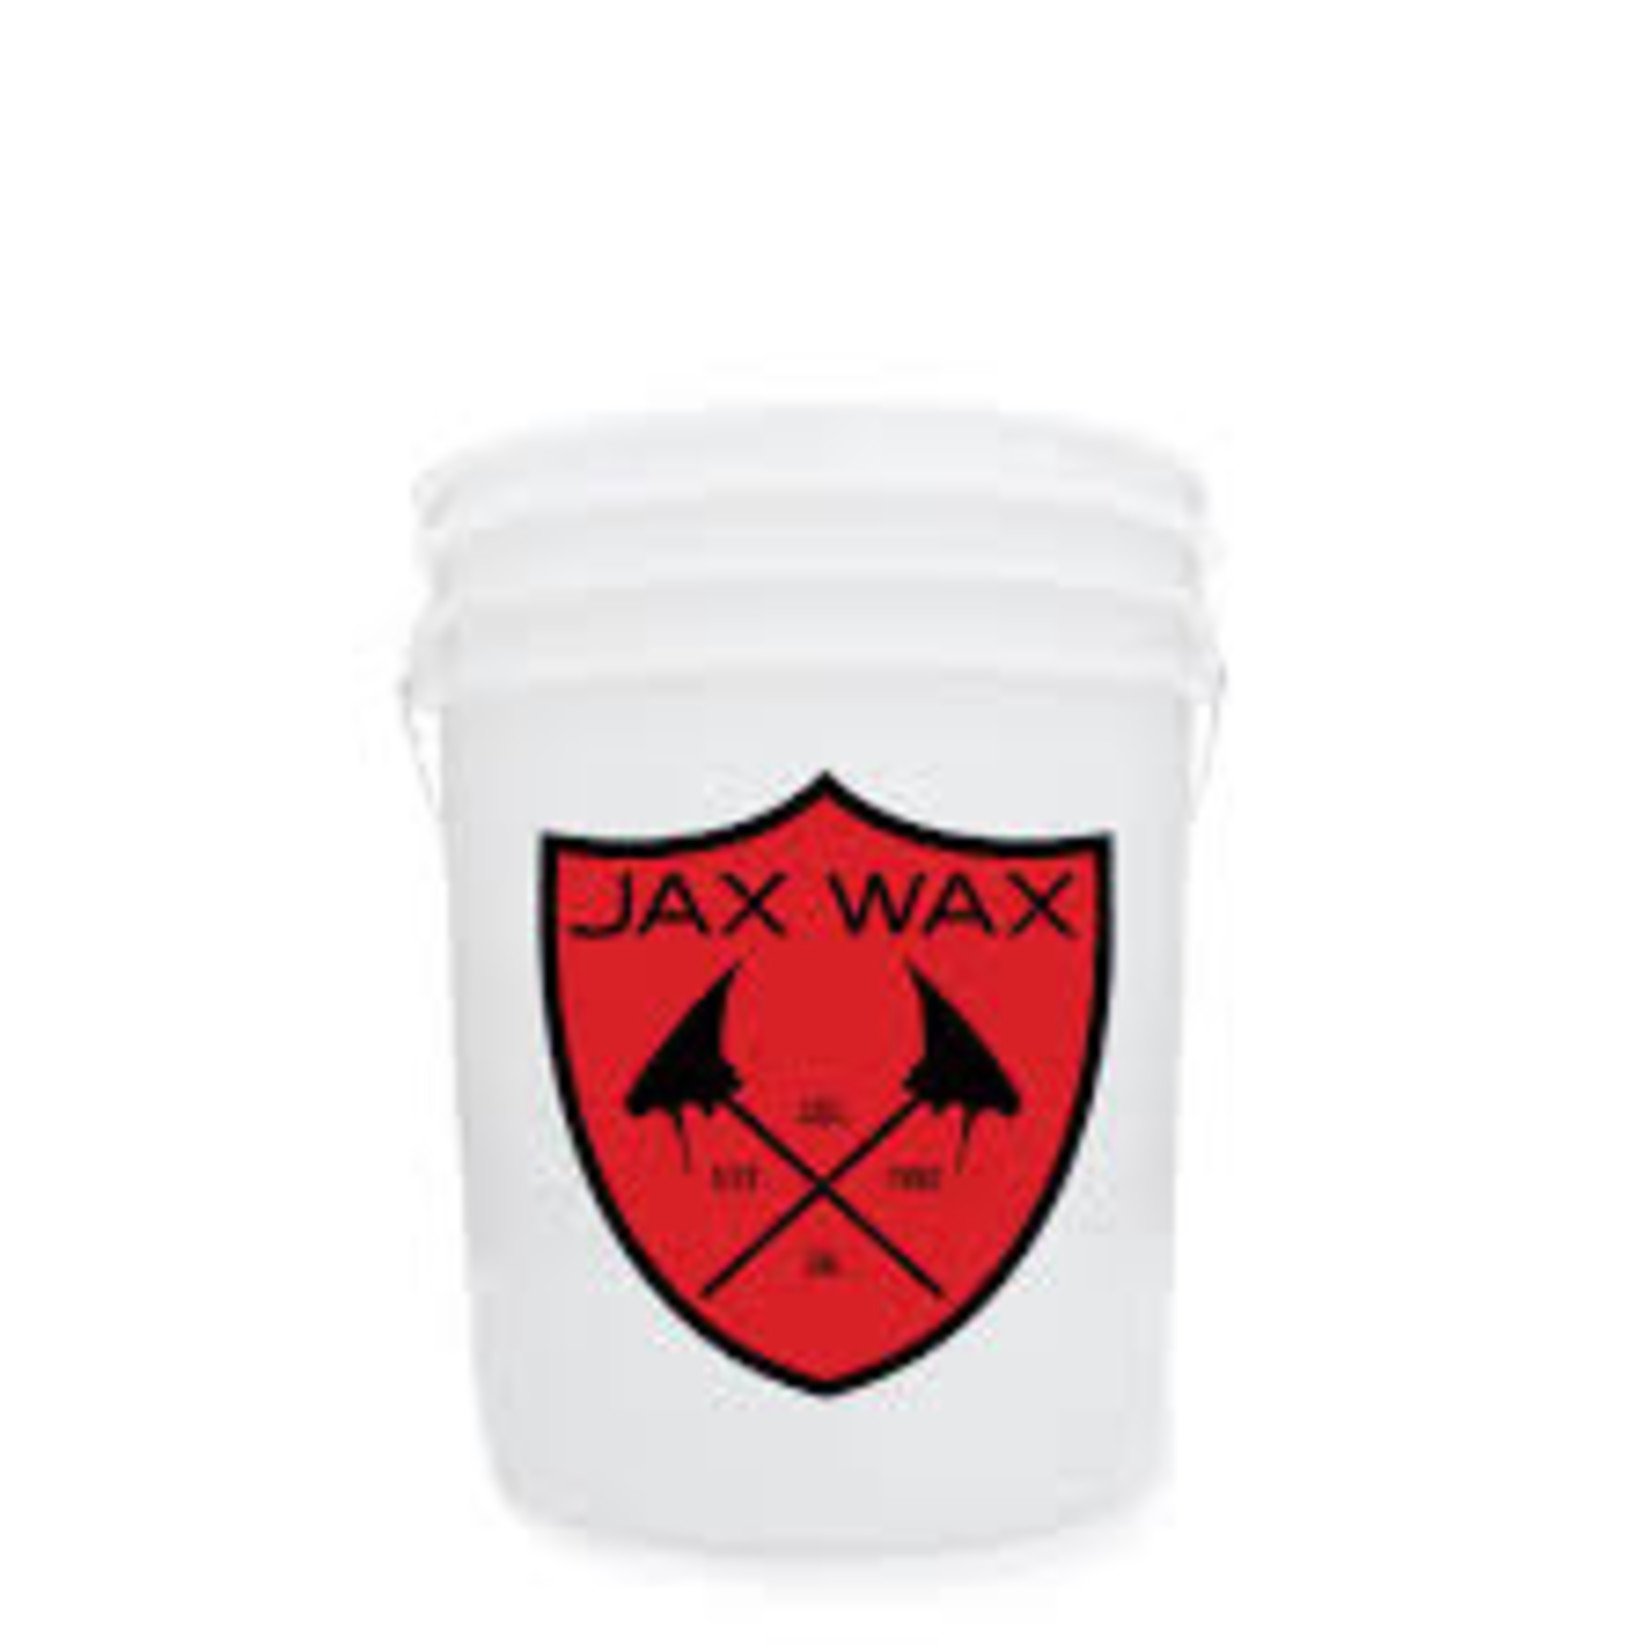 Jax Wax Jax Wax Bucket